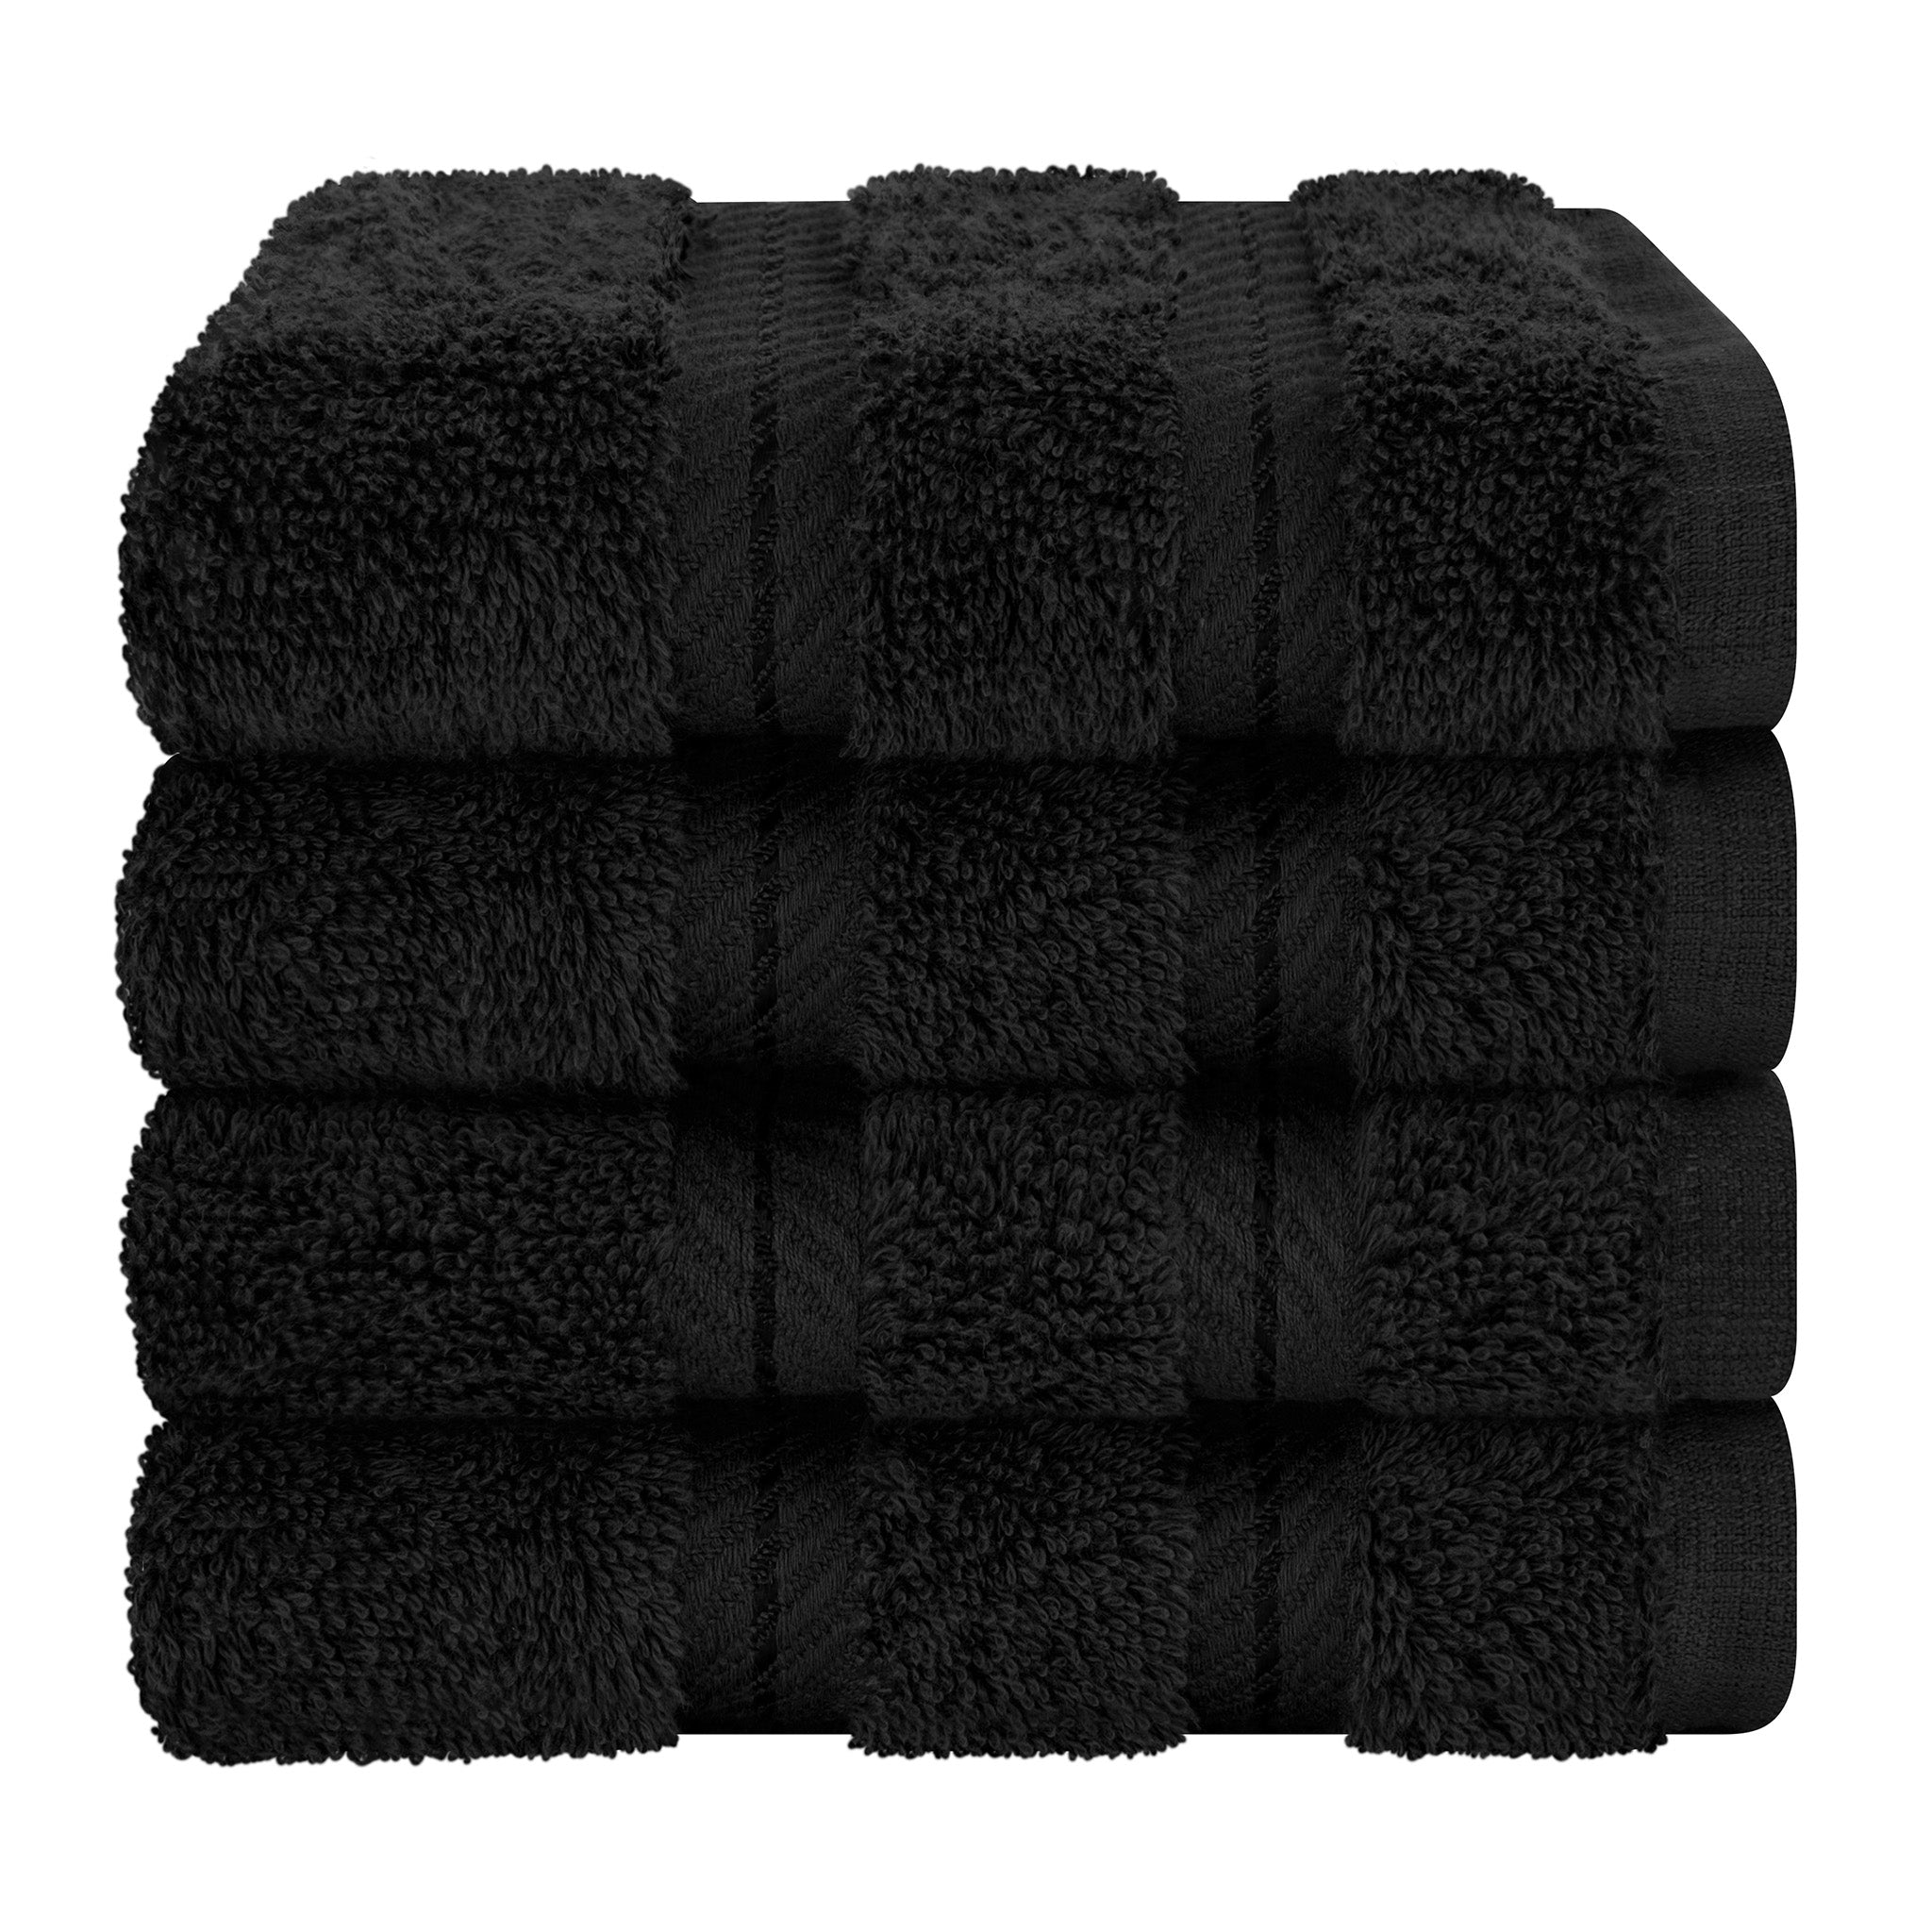 American Soft Linen 100% Turkish Cotton 4 Piece Washcloth Set black-7